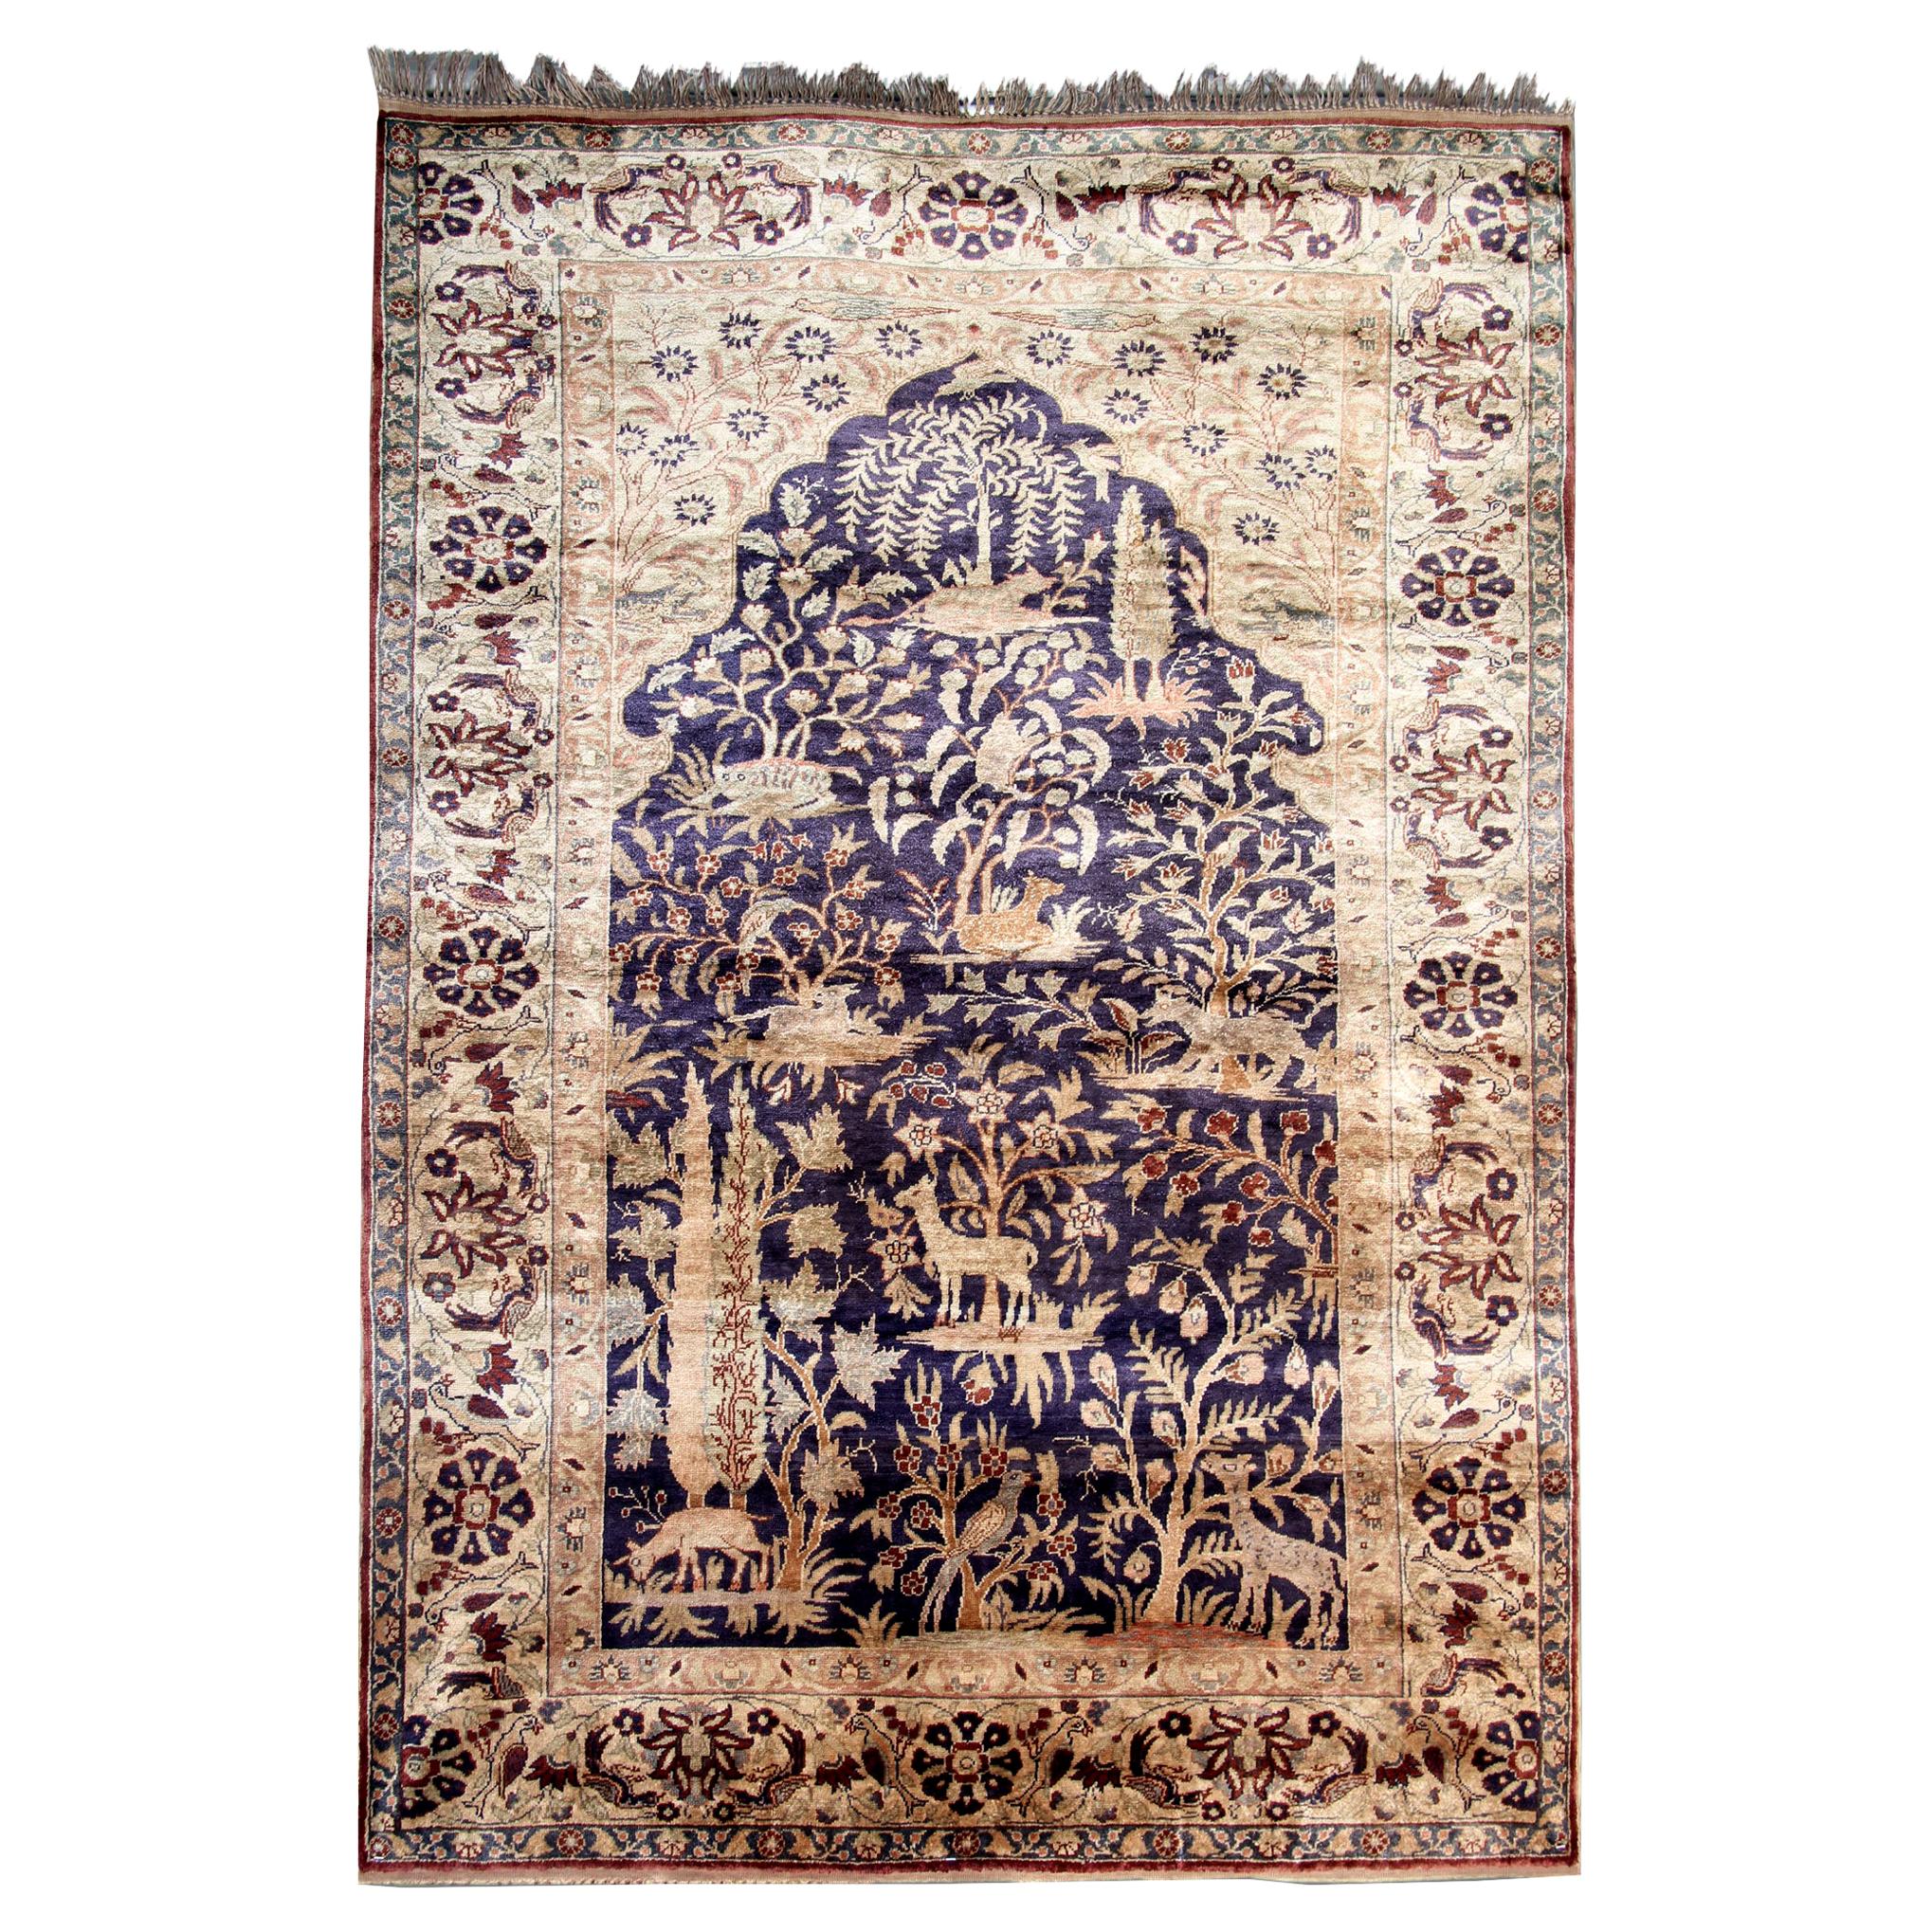 Tapis anciens, tapis en pure soie, tapis de Turquie Tapis faits à la main Tapis oriental